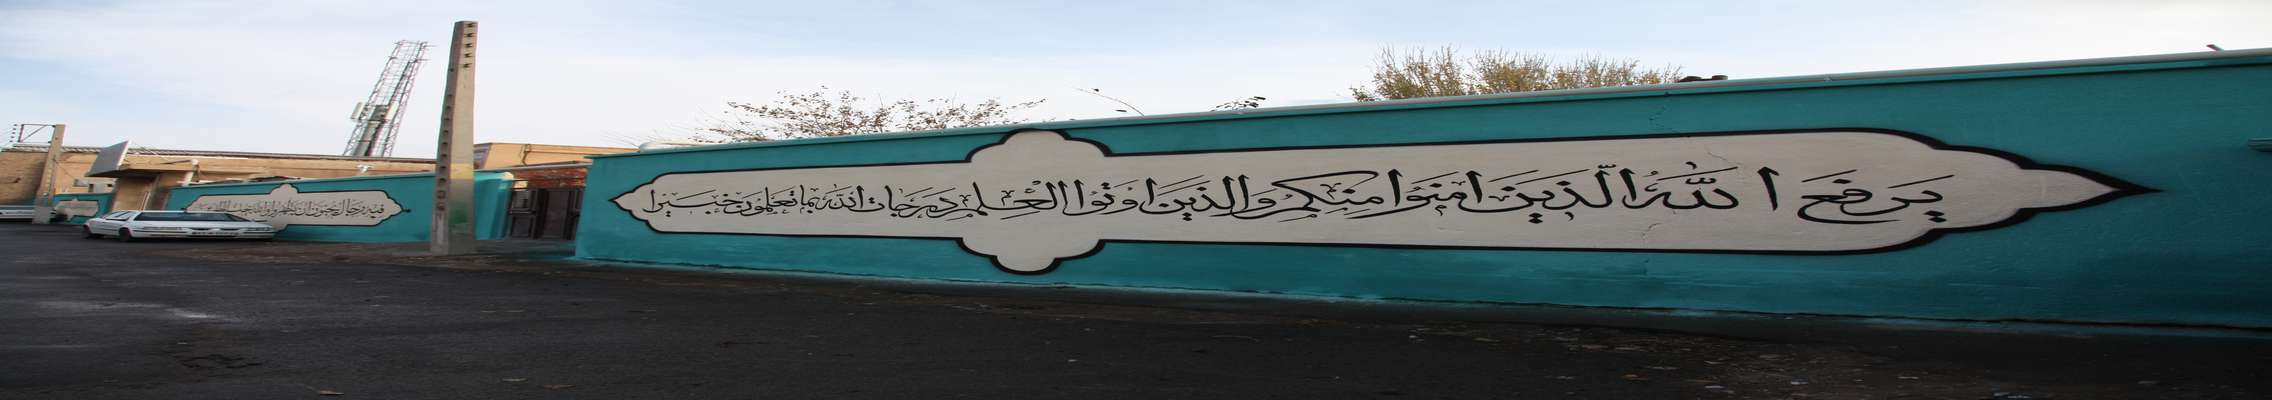 اجرای طرح خطاطی و نقاشی دیواری در ورودی مسجد صادقیه